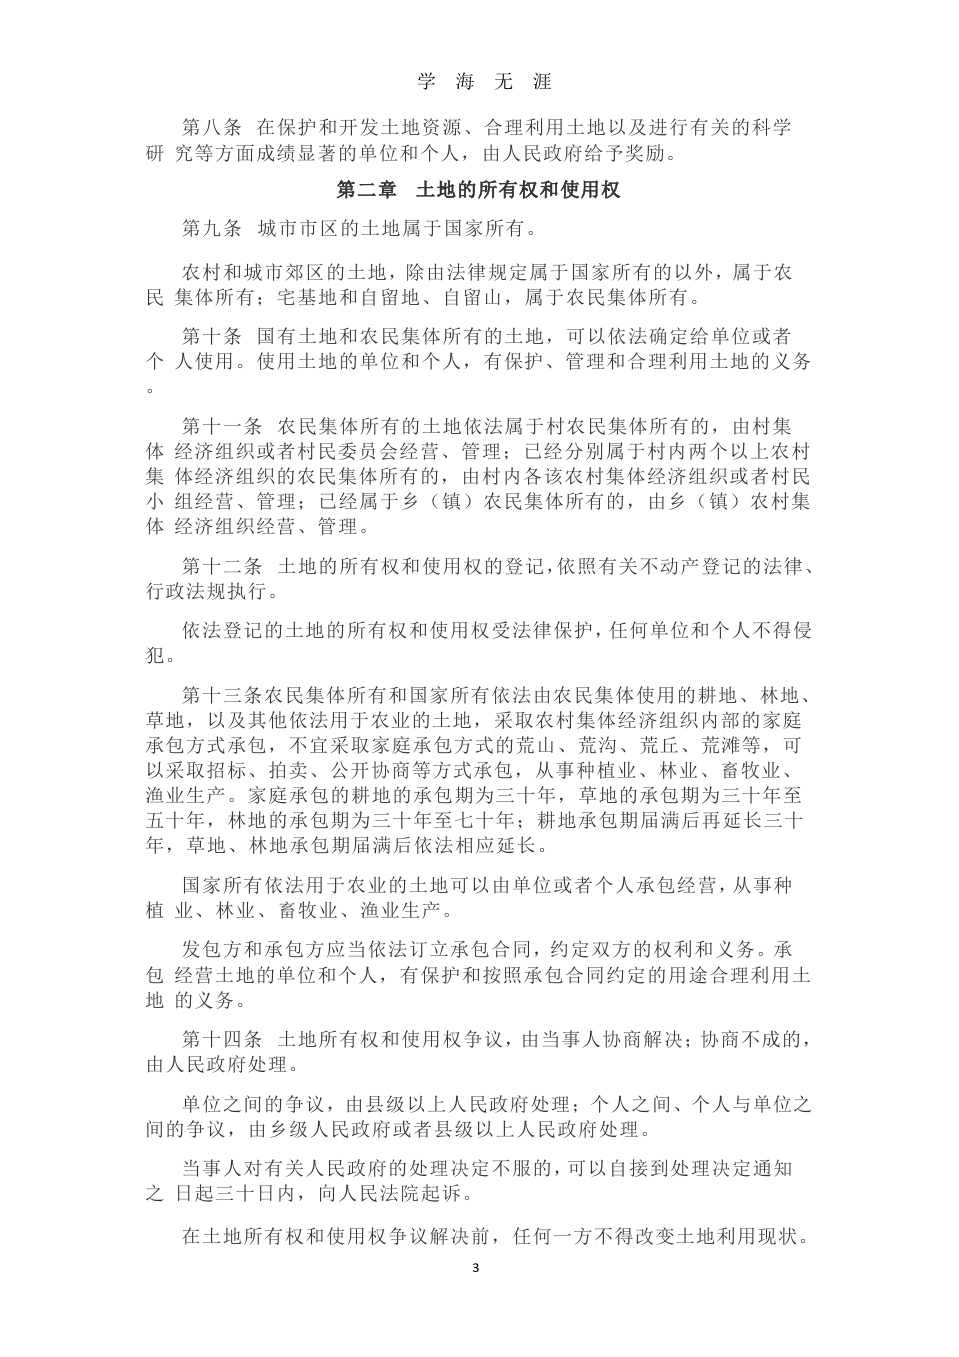 中华人民共和国土地管理法全文2020年新法-十一地法原文.pptx